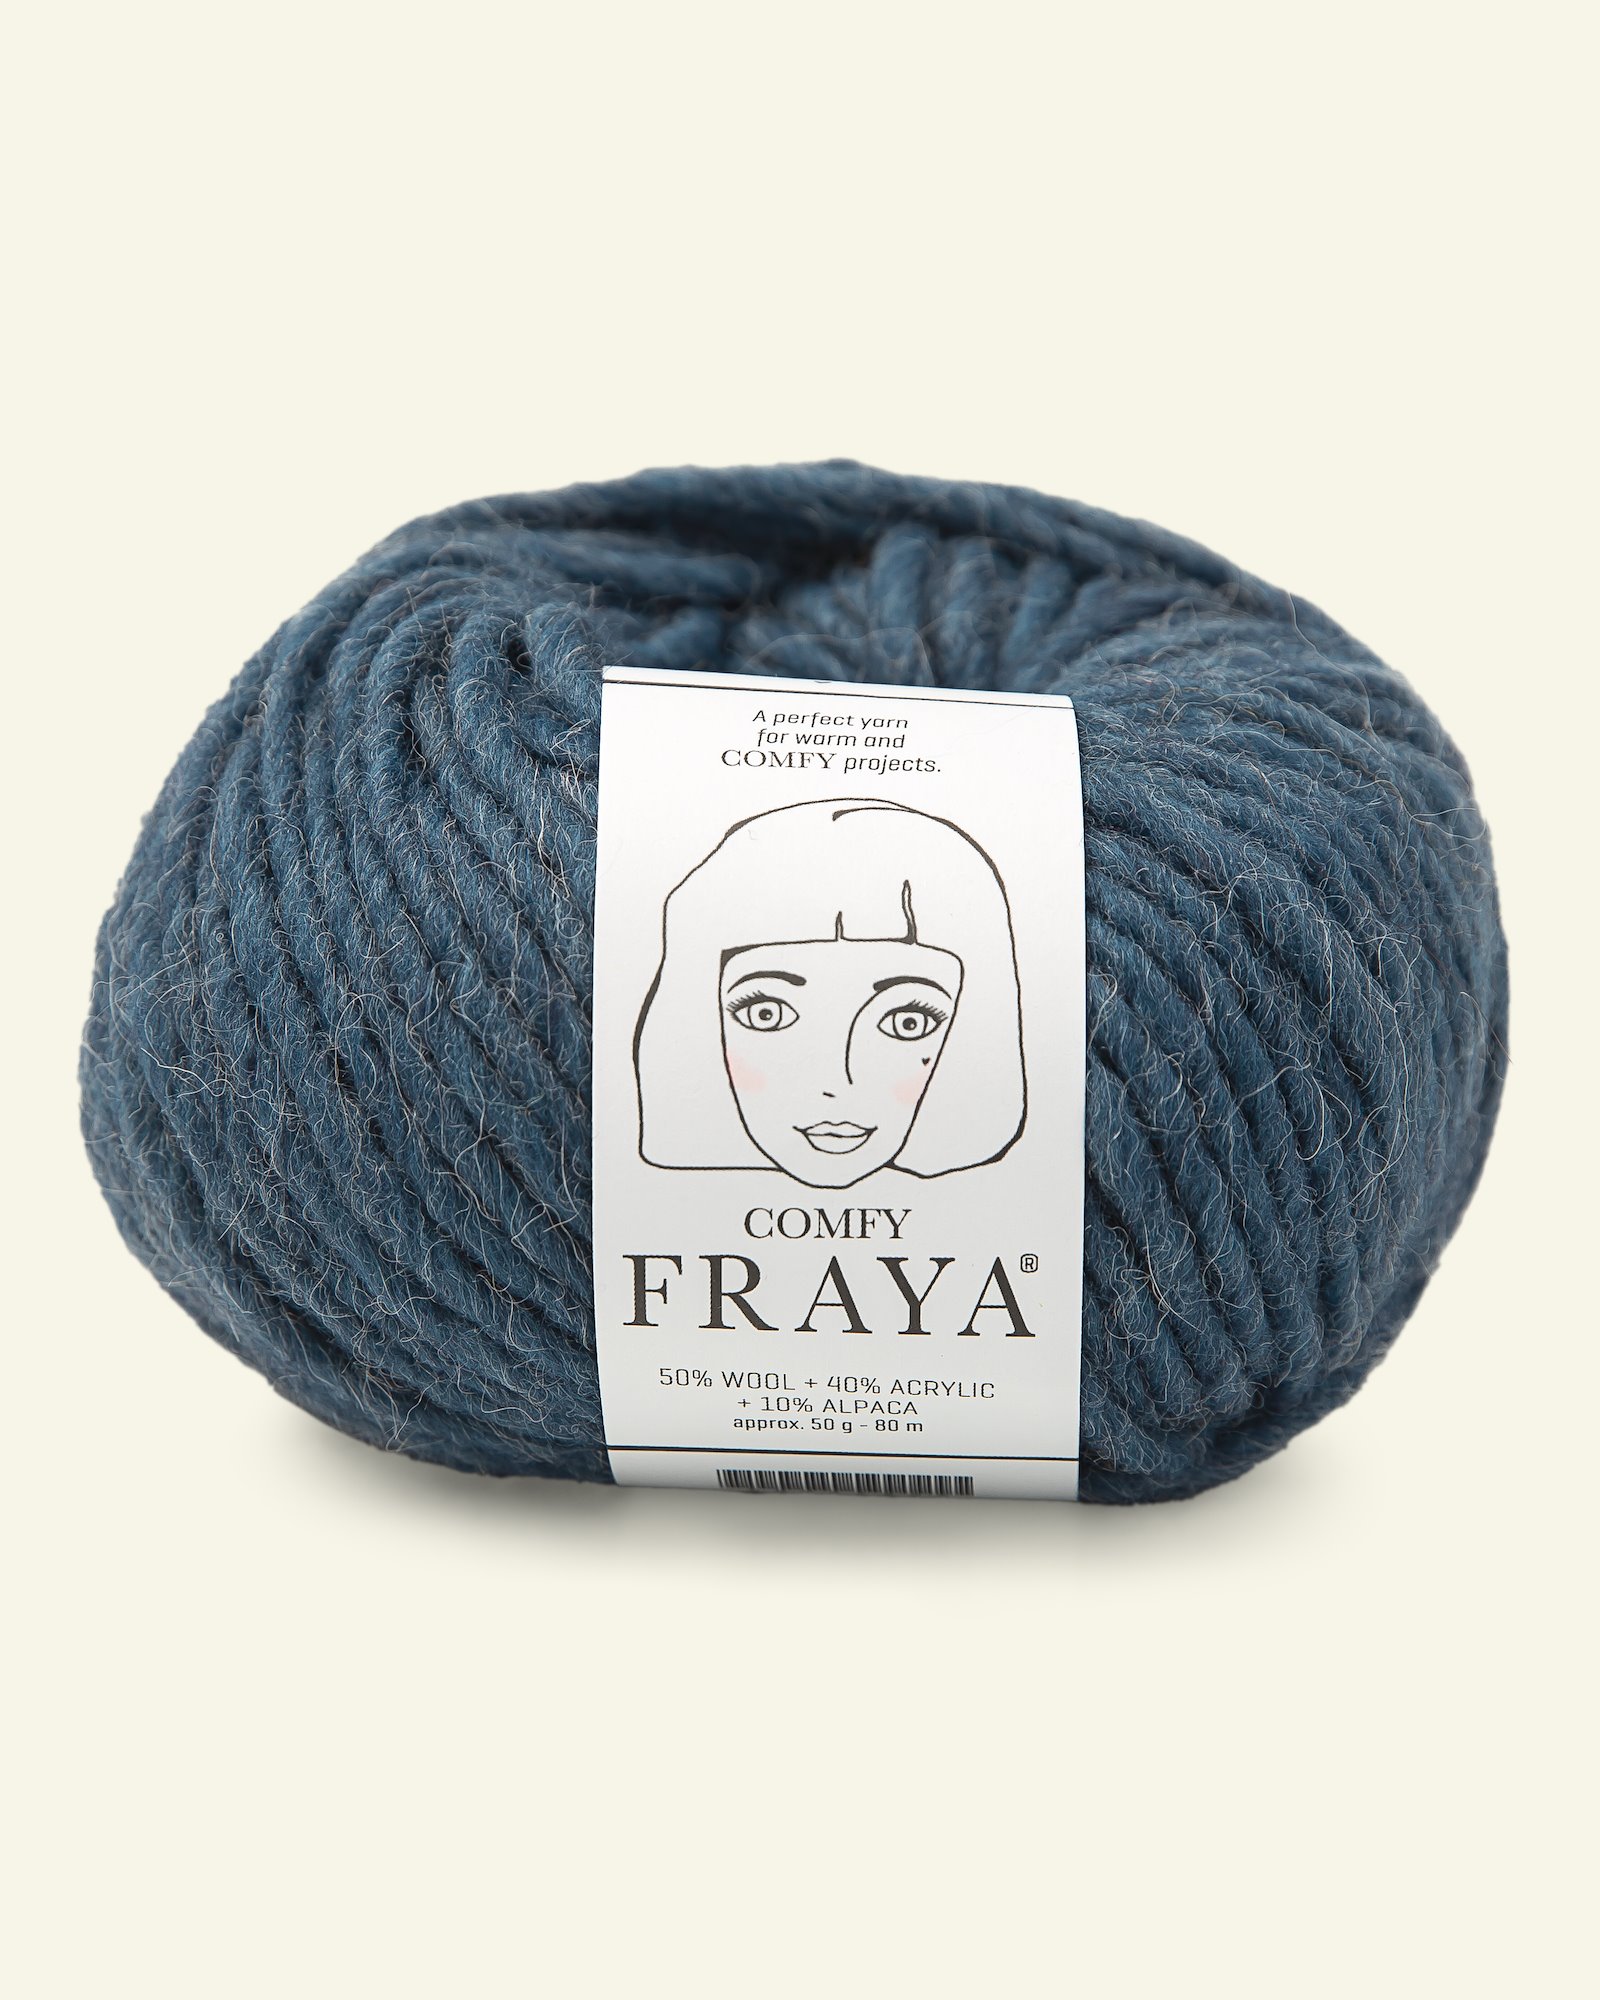 FRAYA, mixed yarn "Comfy", petrol 90054829_pack